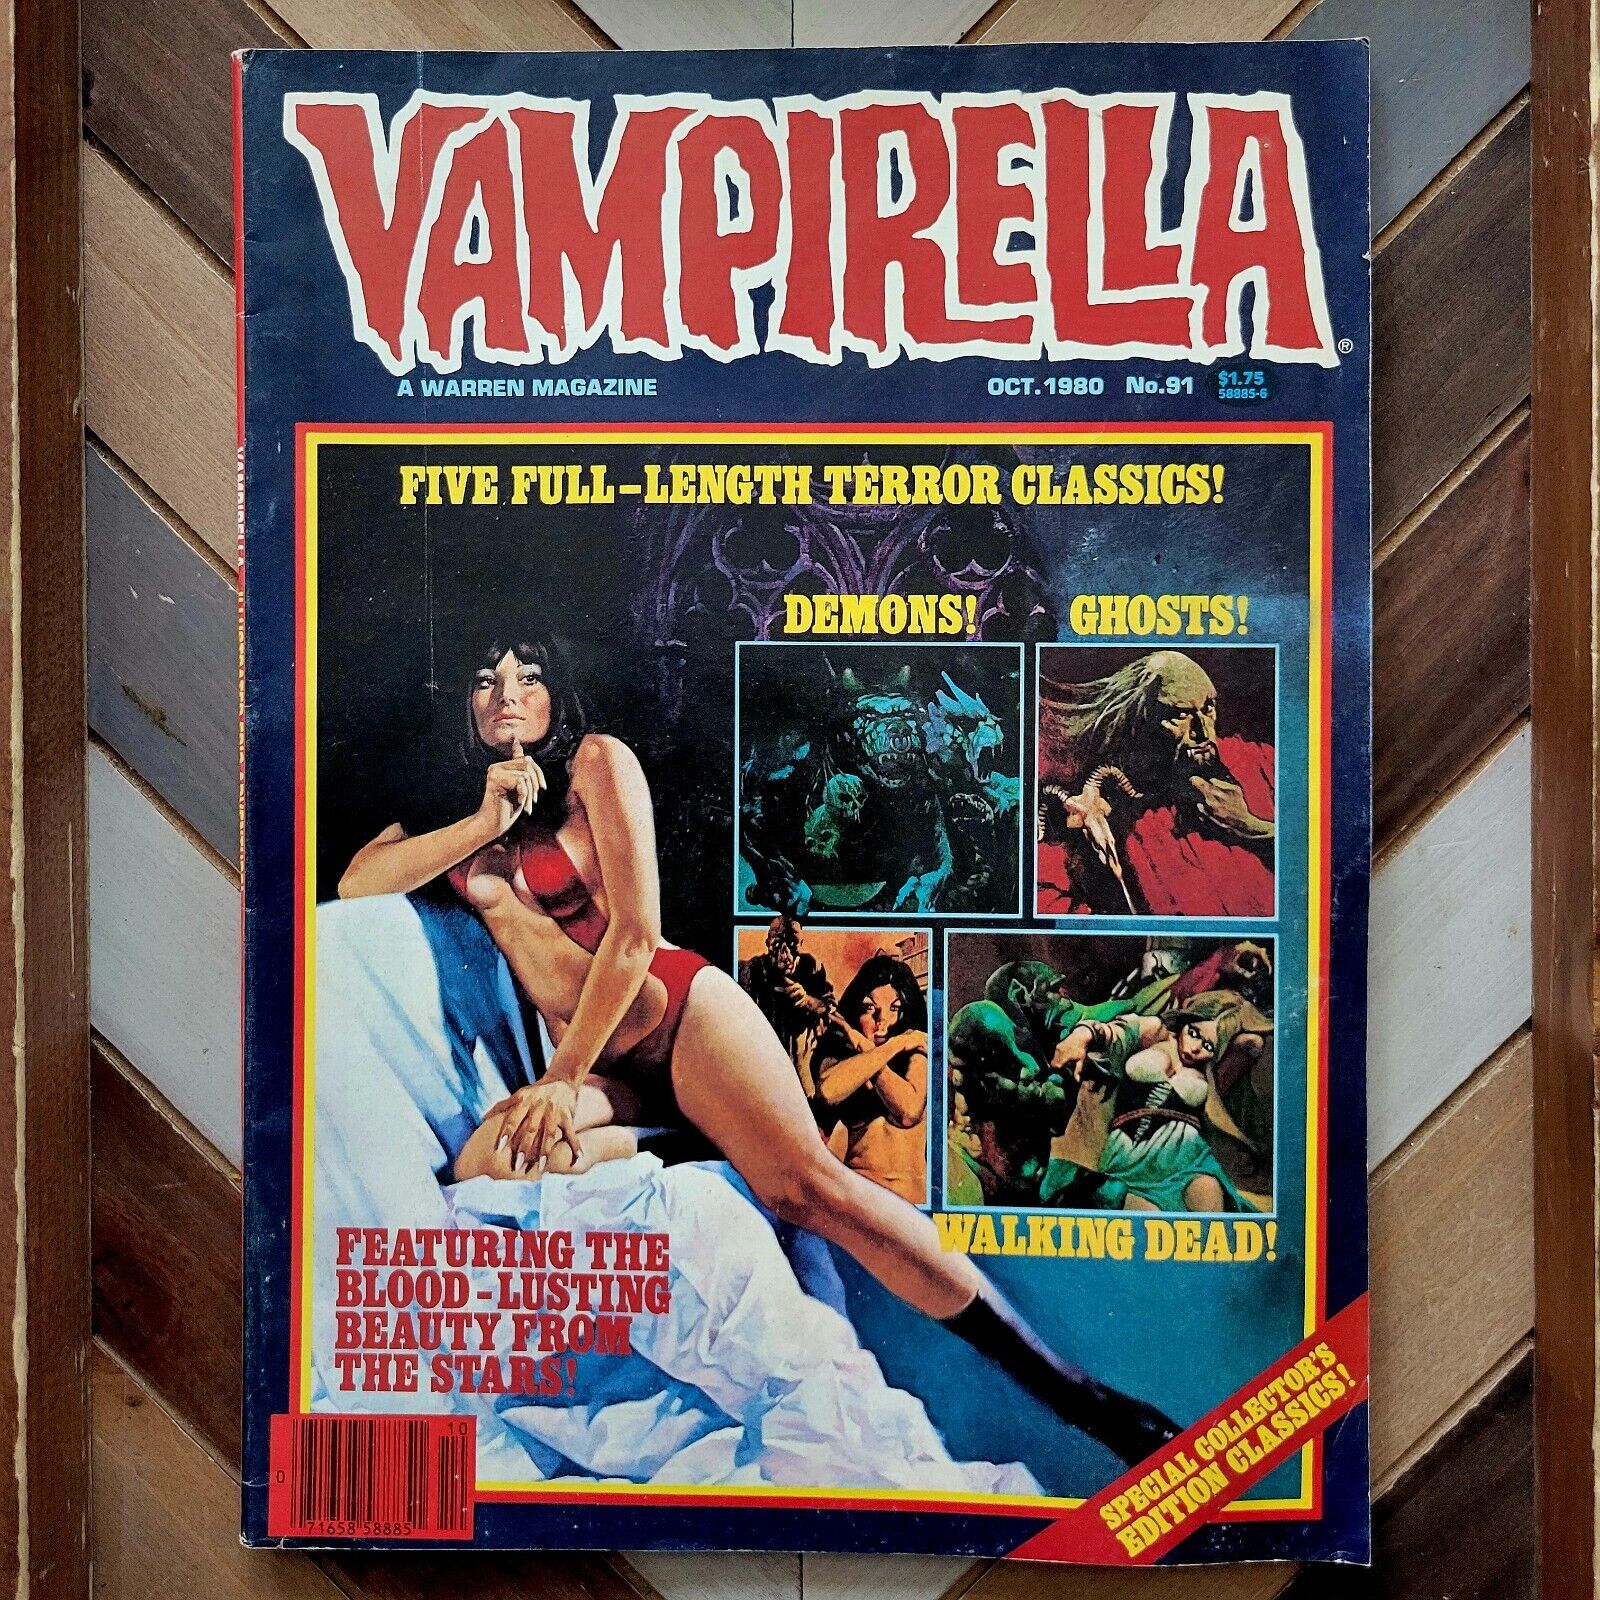 VAMPIRELLA #91 VG/FN (Warren 1980) 1st Series | Enrich Torres Montage Cover